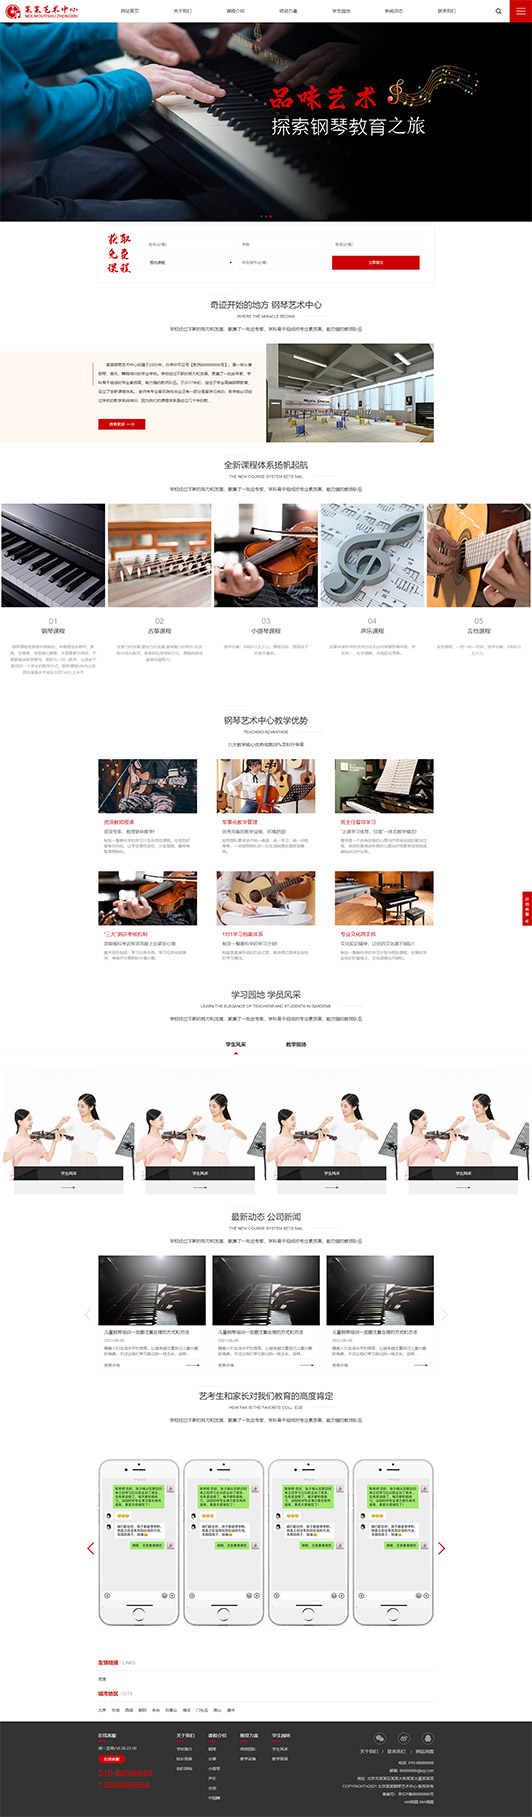 德州钢琴艺术培训公司响应式企业网站